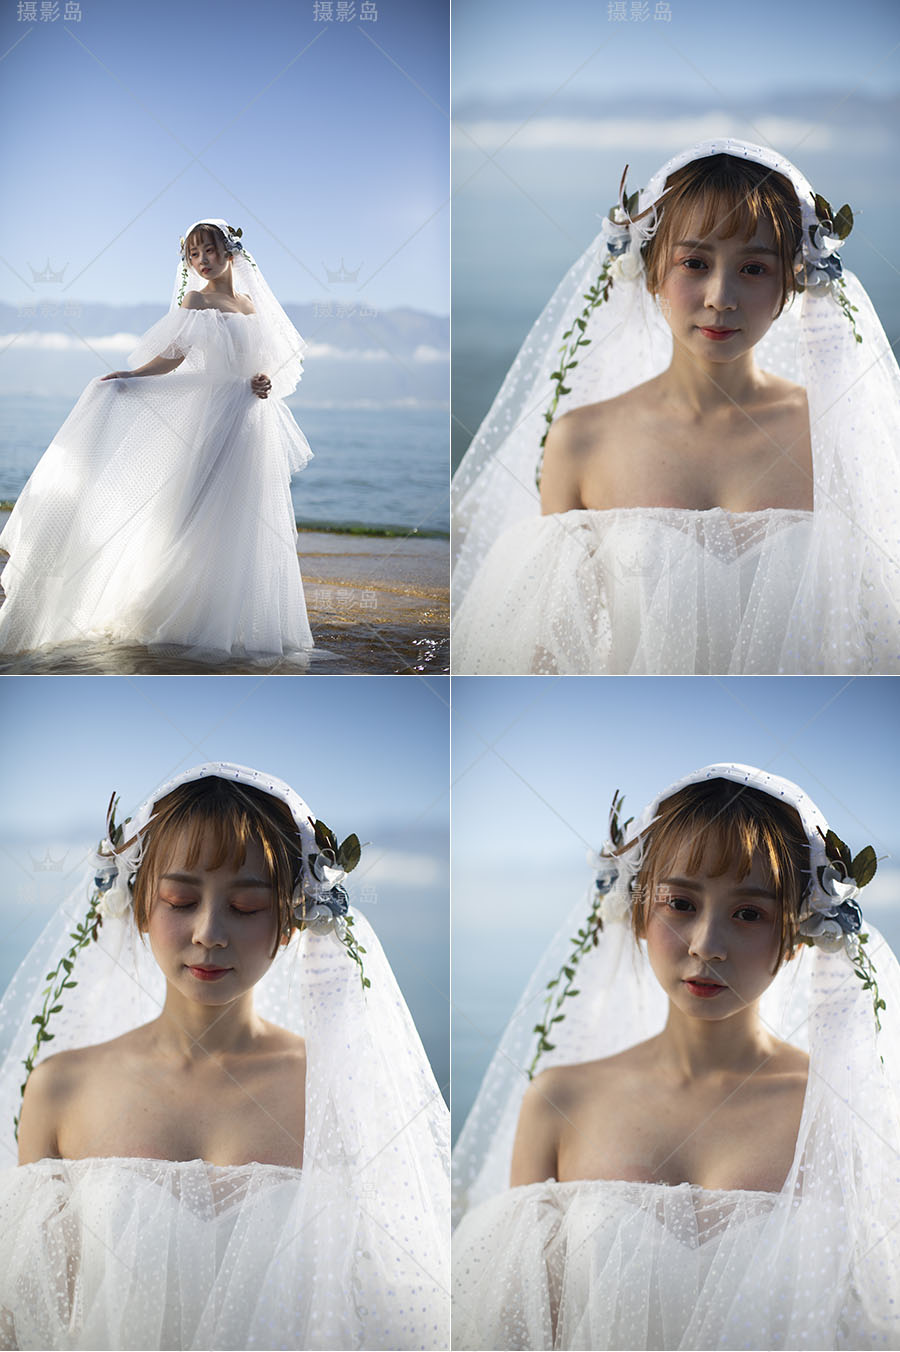 女孩单人海边婚纱照写真摄影作品图片raw未修原片